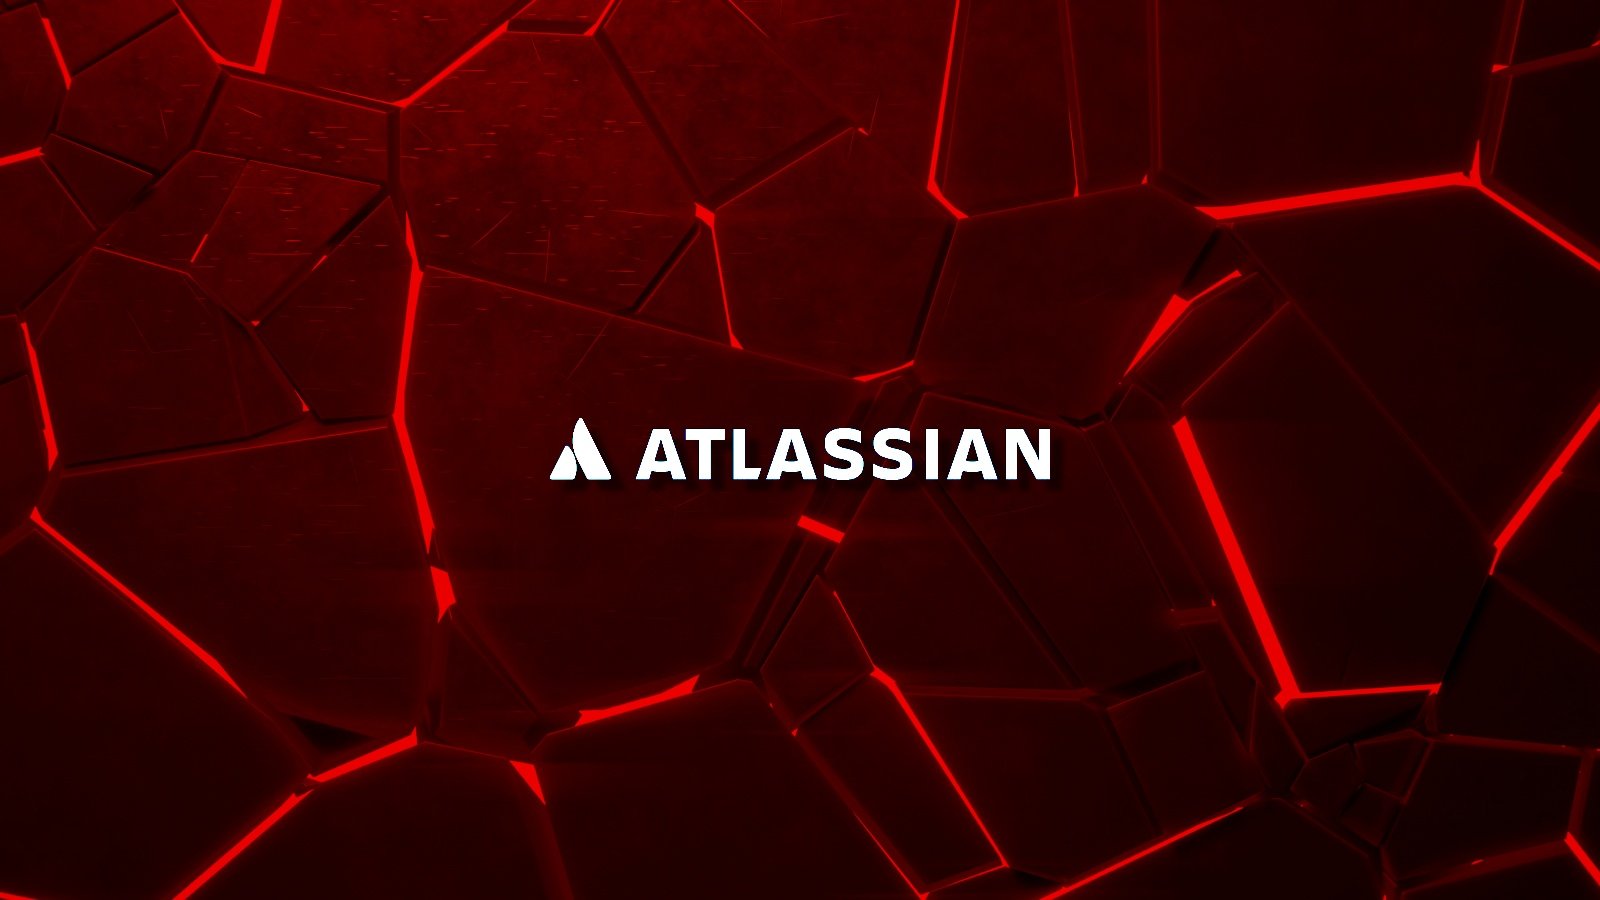 Atlassia